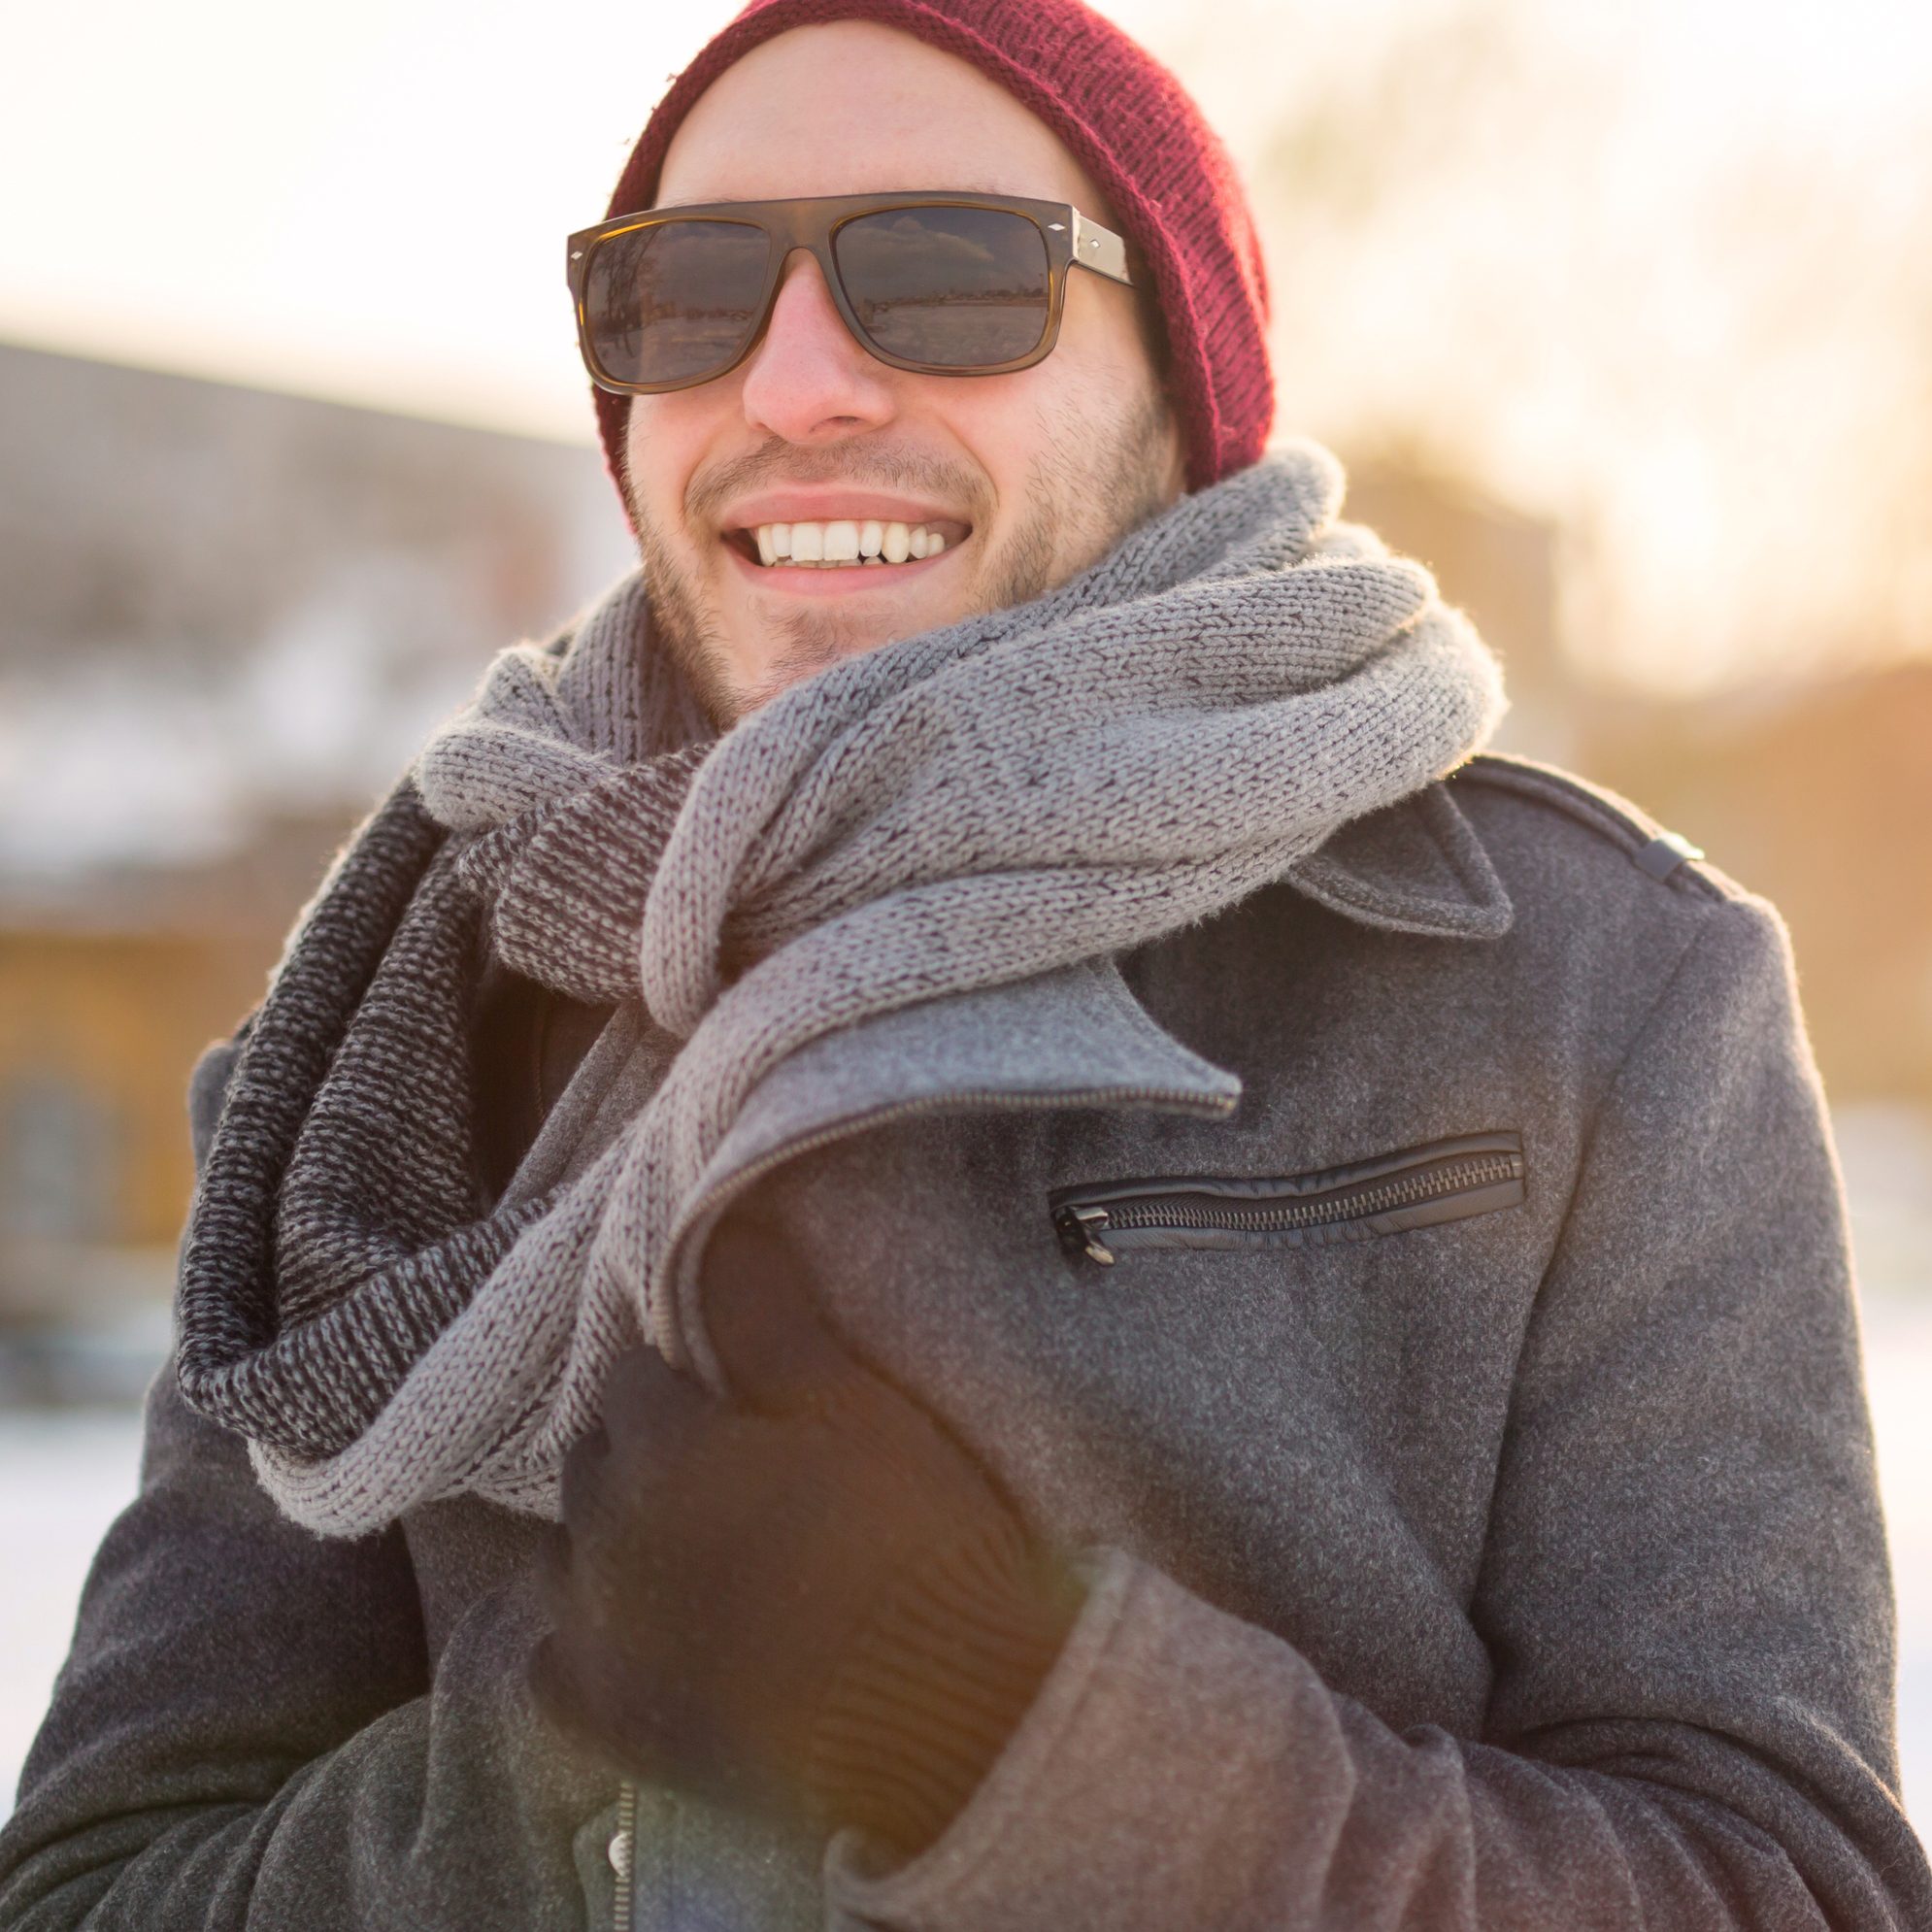 5 reasons to wear sunglasses in winter